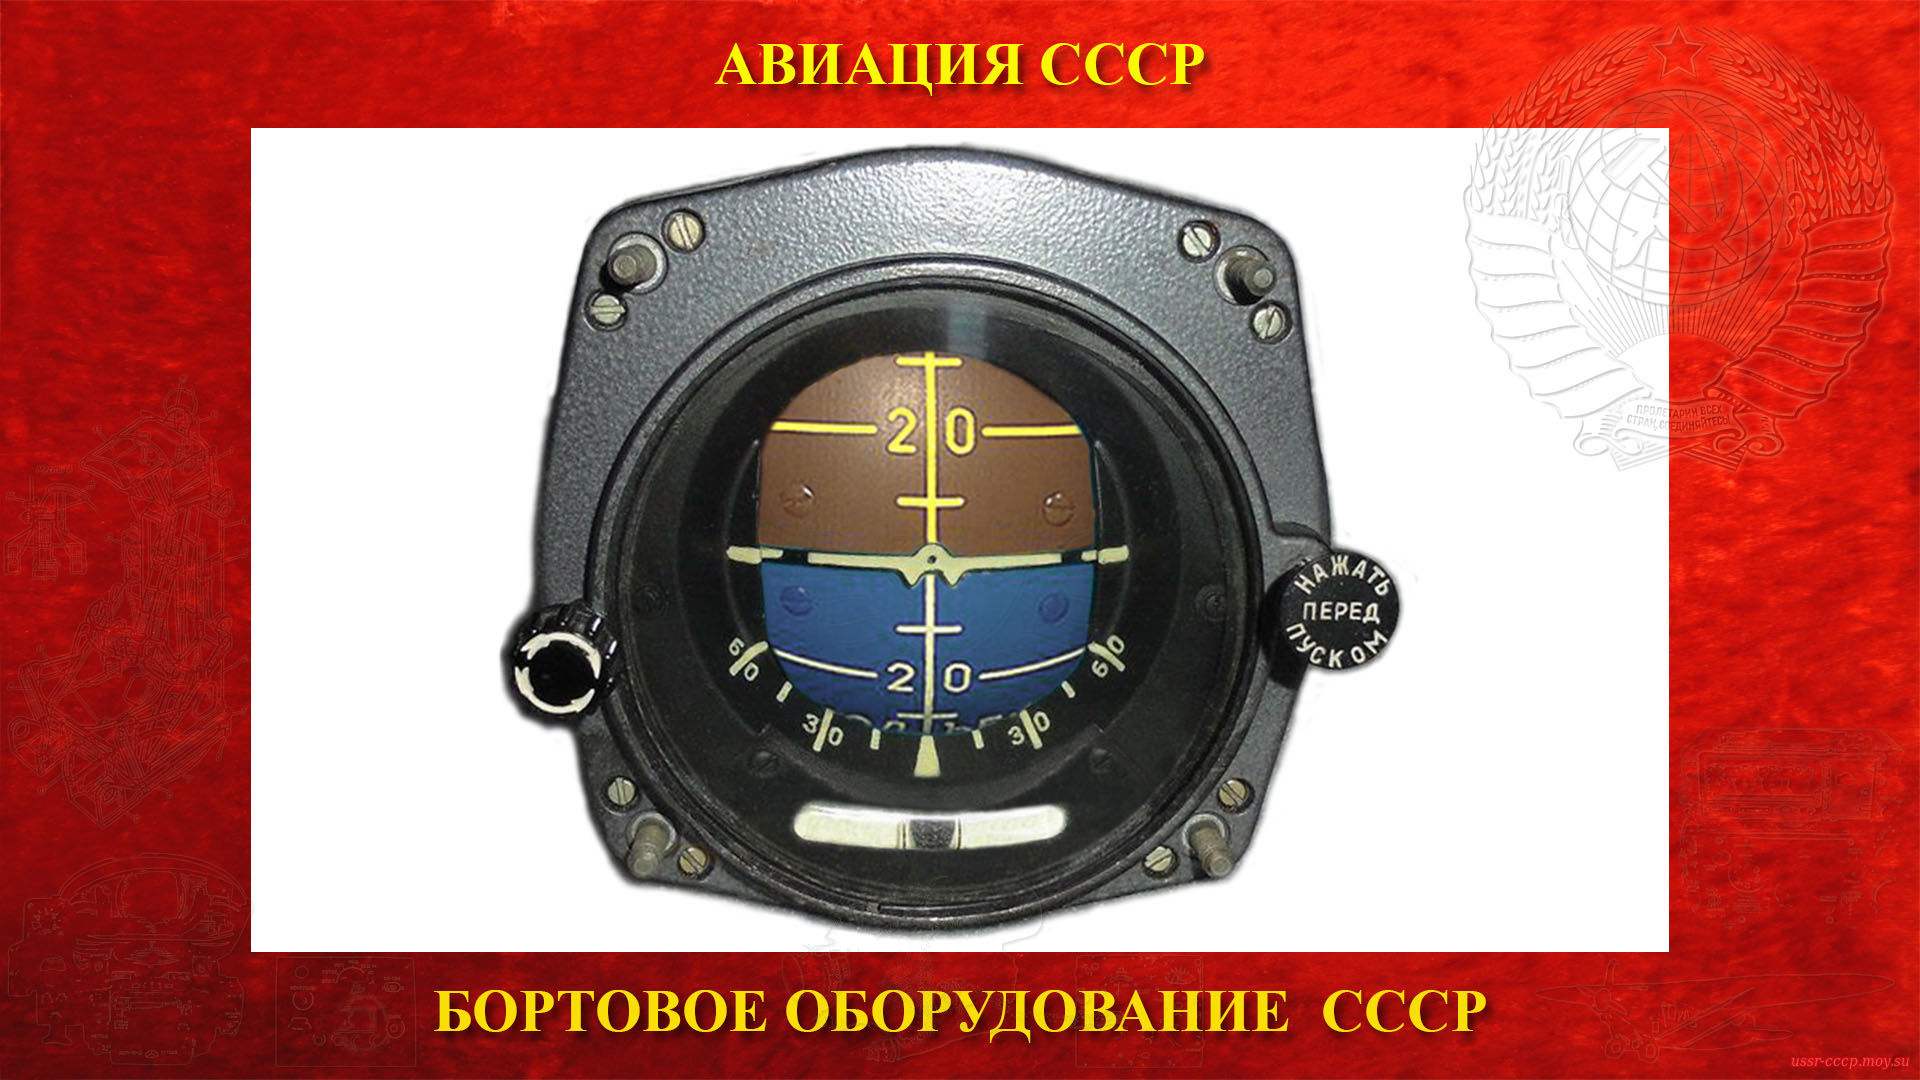 АГИ-1 (2-й серии) — Авиагоризонт — Гироскопический прибор СССР